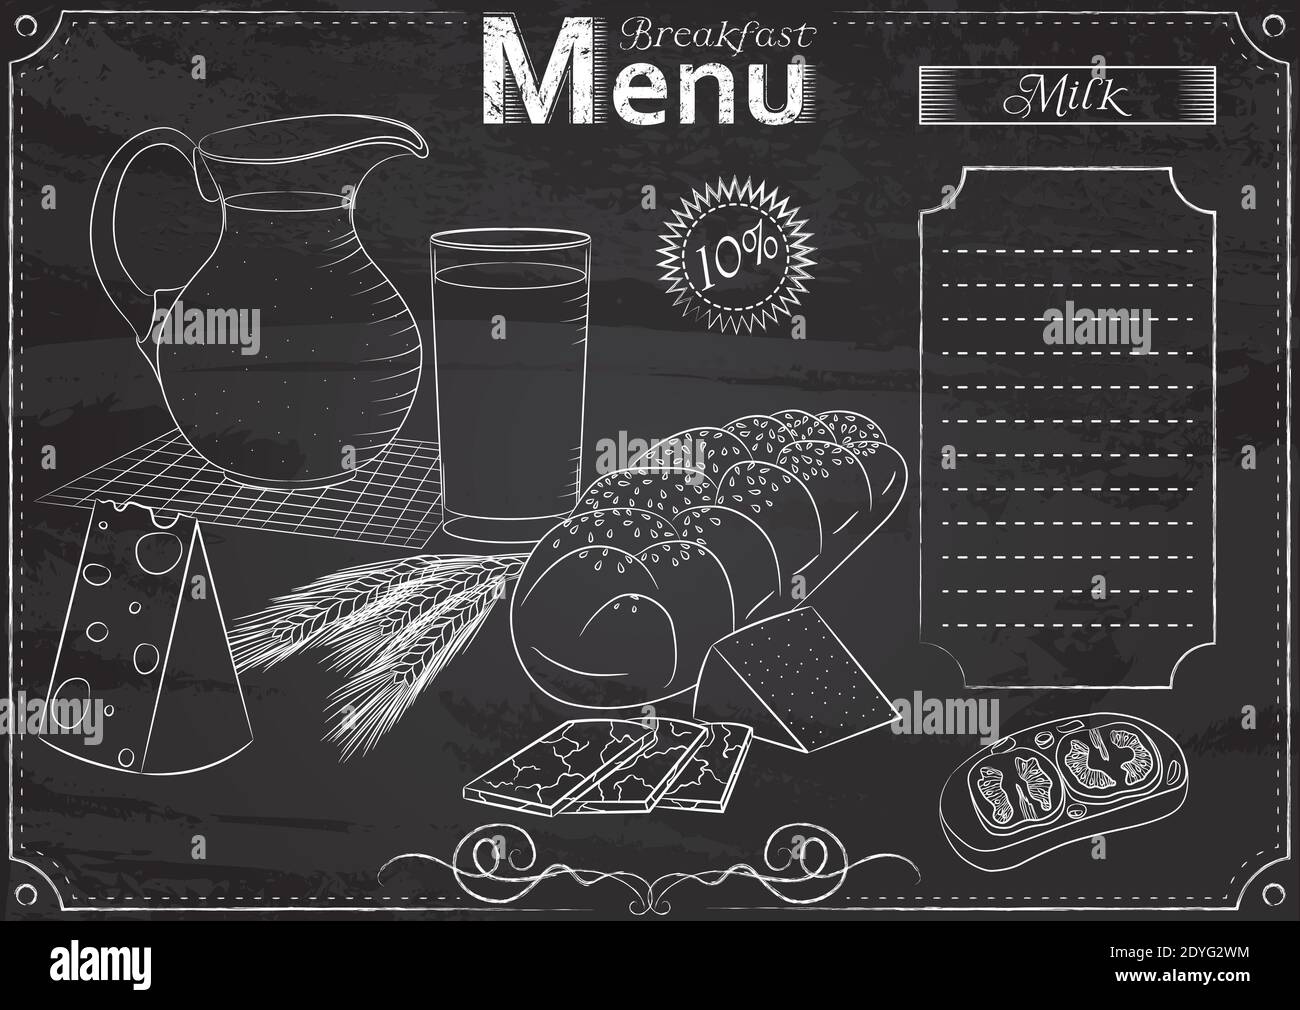 Modèle vectoriel avec éléments de lait de petit déjeuner pour un menu stylisé avec dessin à la craie sur tableau noir.Design pour un restaurant, un café ou un bar Illustration de Vecteur